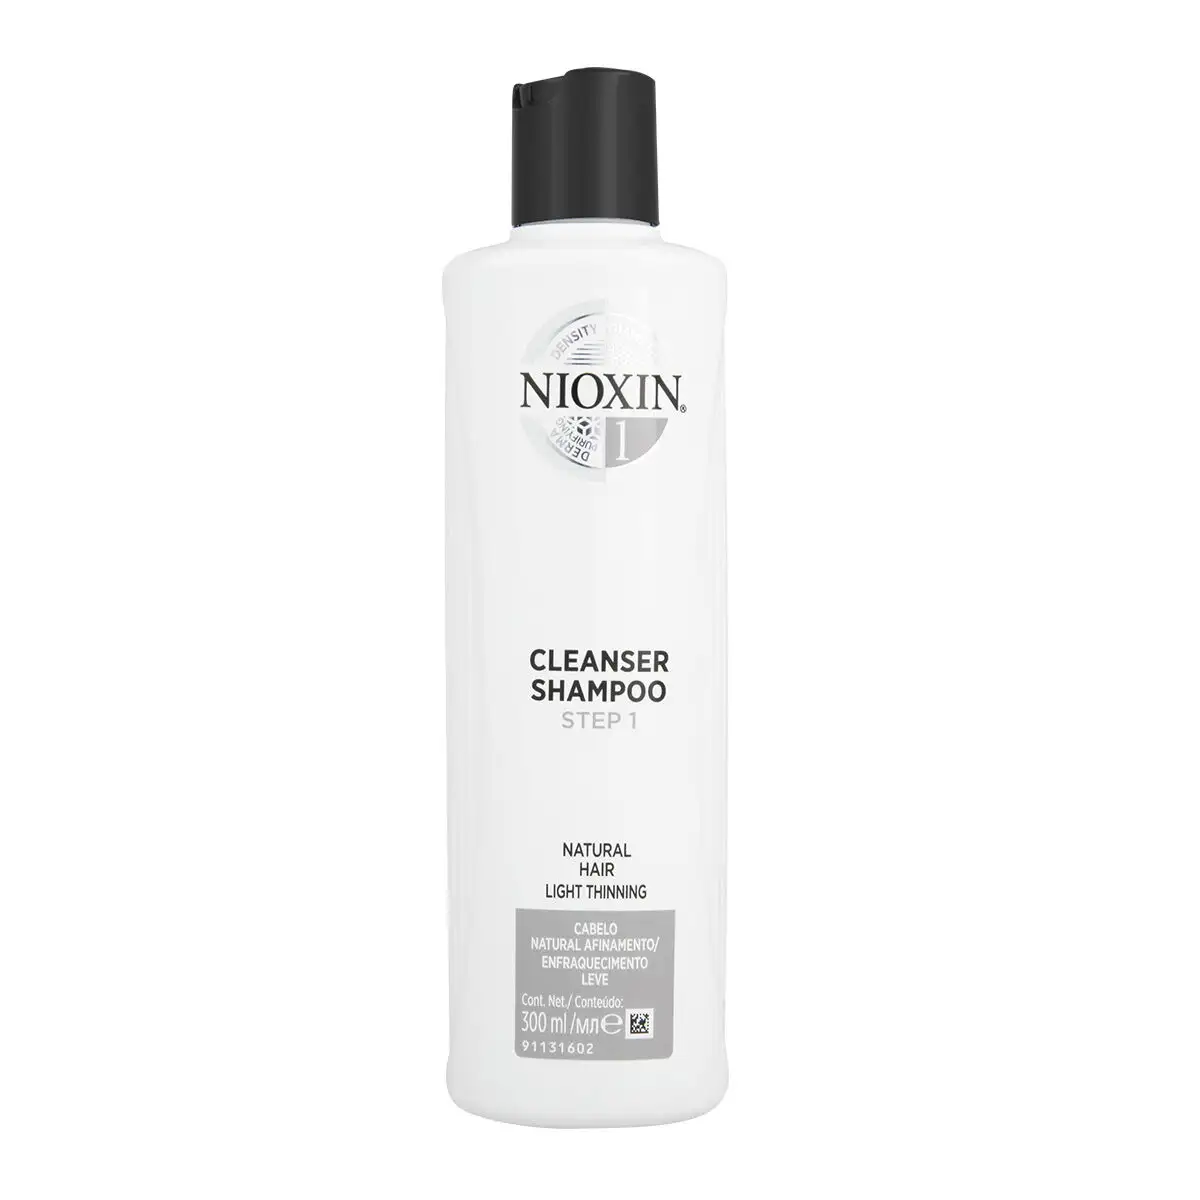 Shampooing nioxin system 1 cleanser 300 ml_1508. DIAYTAR SENEGAL - Votre Destination pour un Shopping Inégalé. Naviguez à travers notre sélection minutieuse pour trouver des produits qui répondent à tous vos besoins.